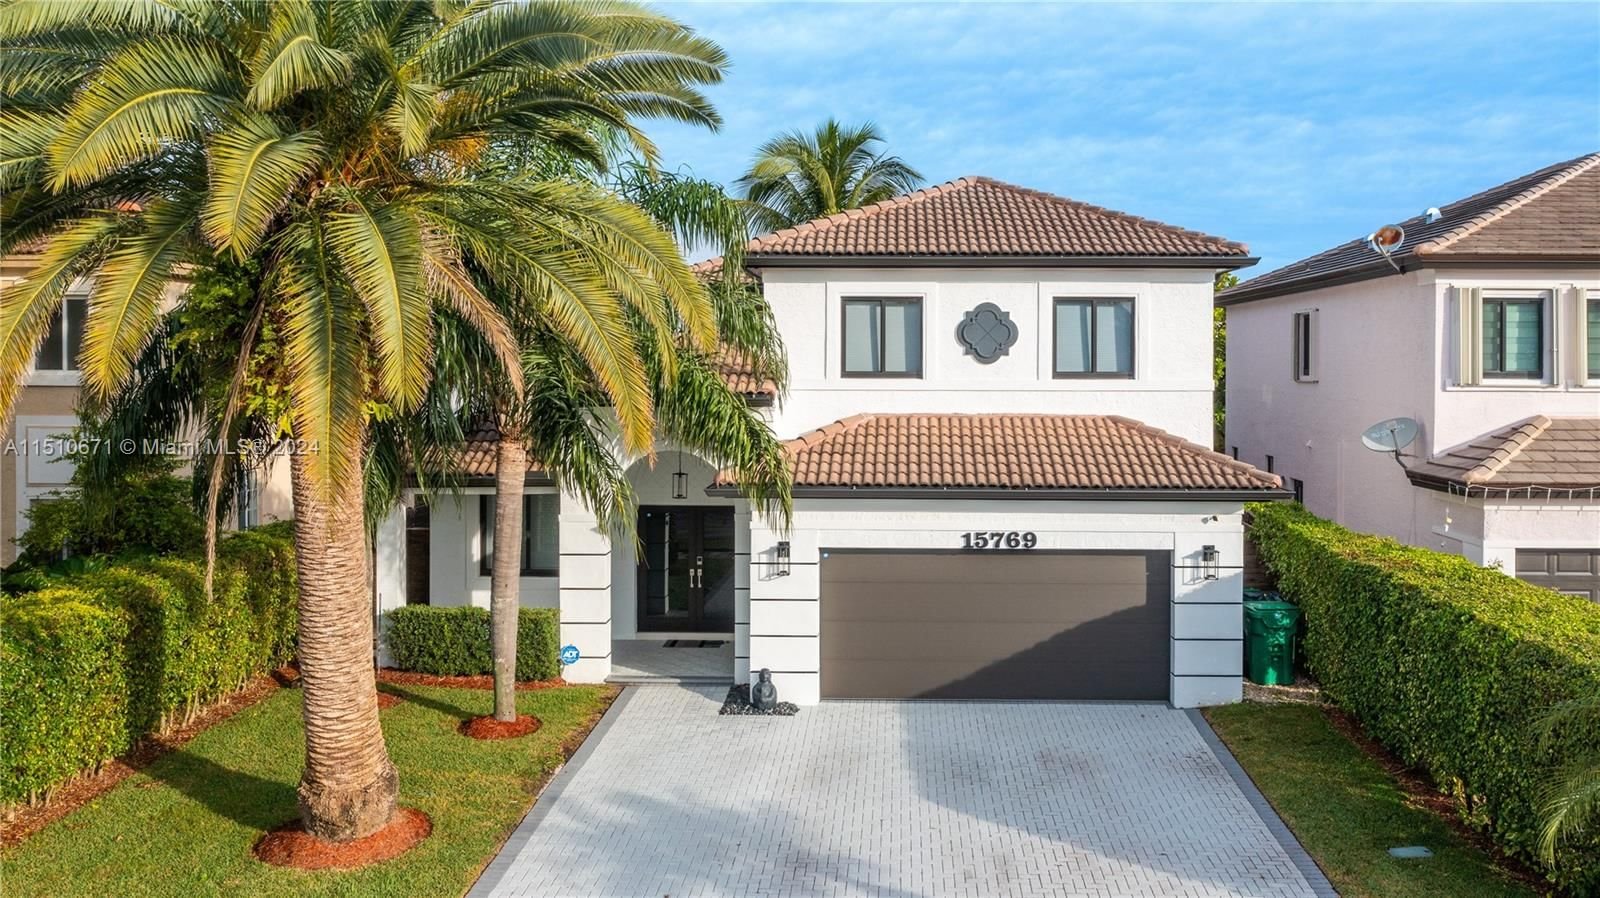 Real estate property located at 15769 140th St, Miami-Dade County, MILON VENTURE, Miami, FL